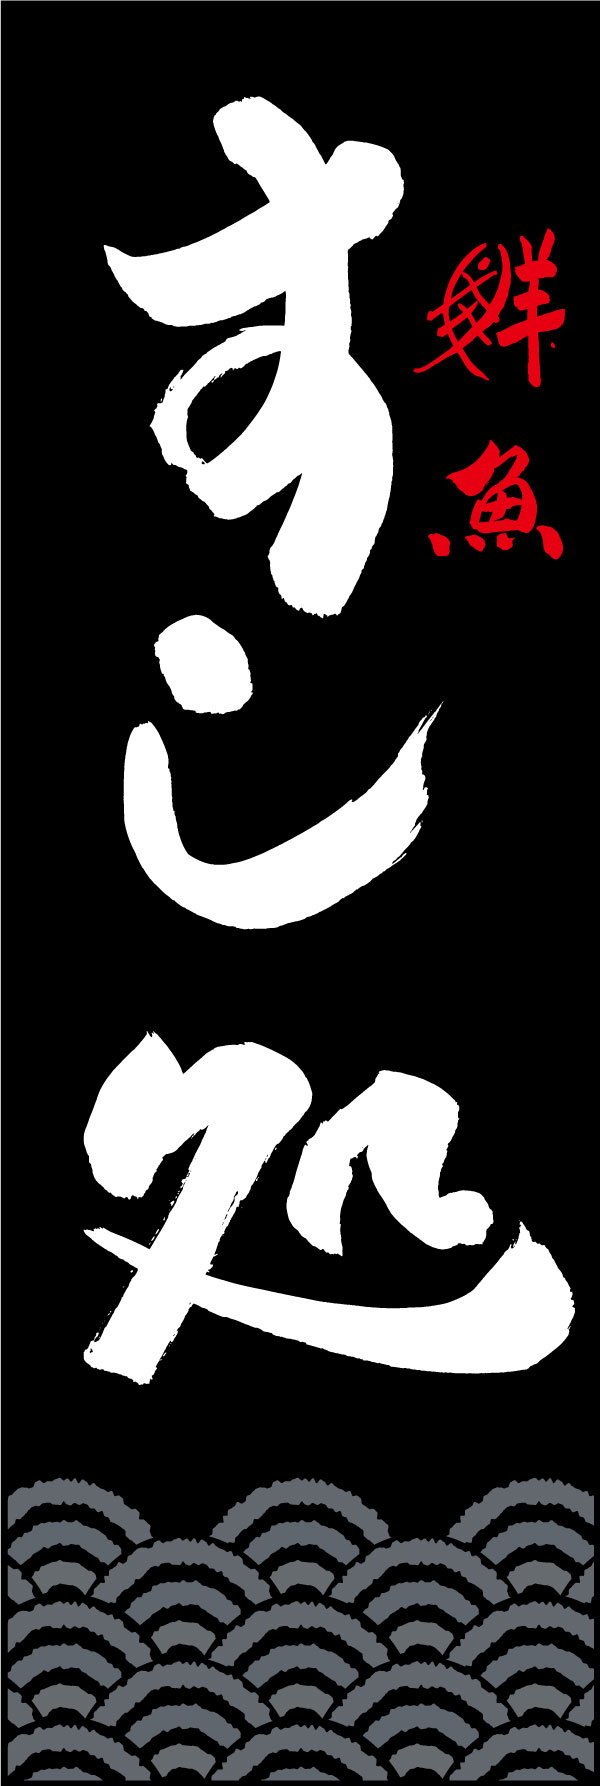 すし処 144_02「すし処」ののぼりです。江戸文字職人 加藤木大介氏による、手書きの筆文字です。完全書き下ろし、唯一無二ののぼりは当店だけのオリジナル商品です。（Y.M） 